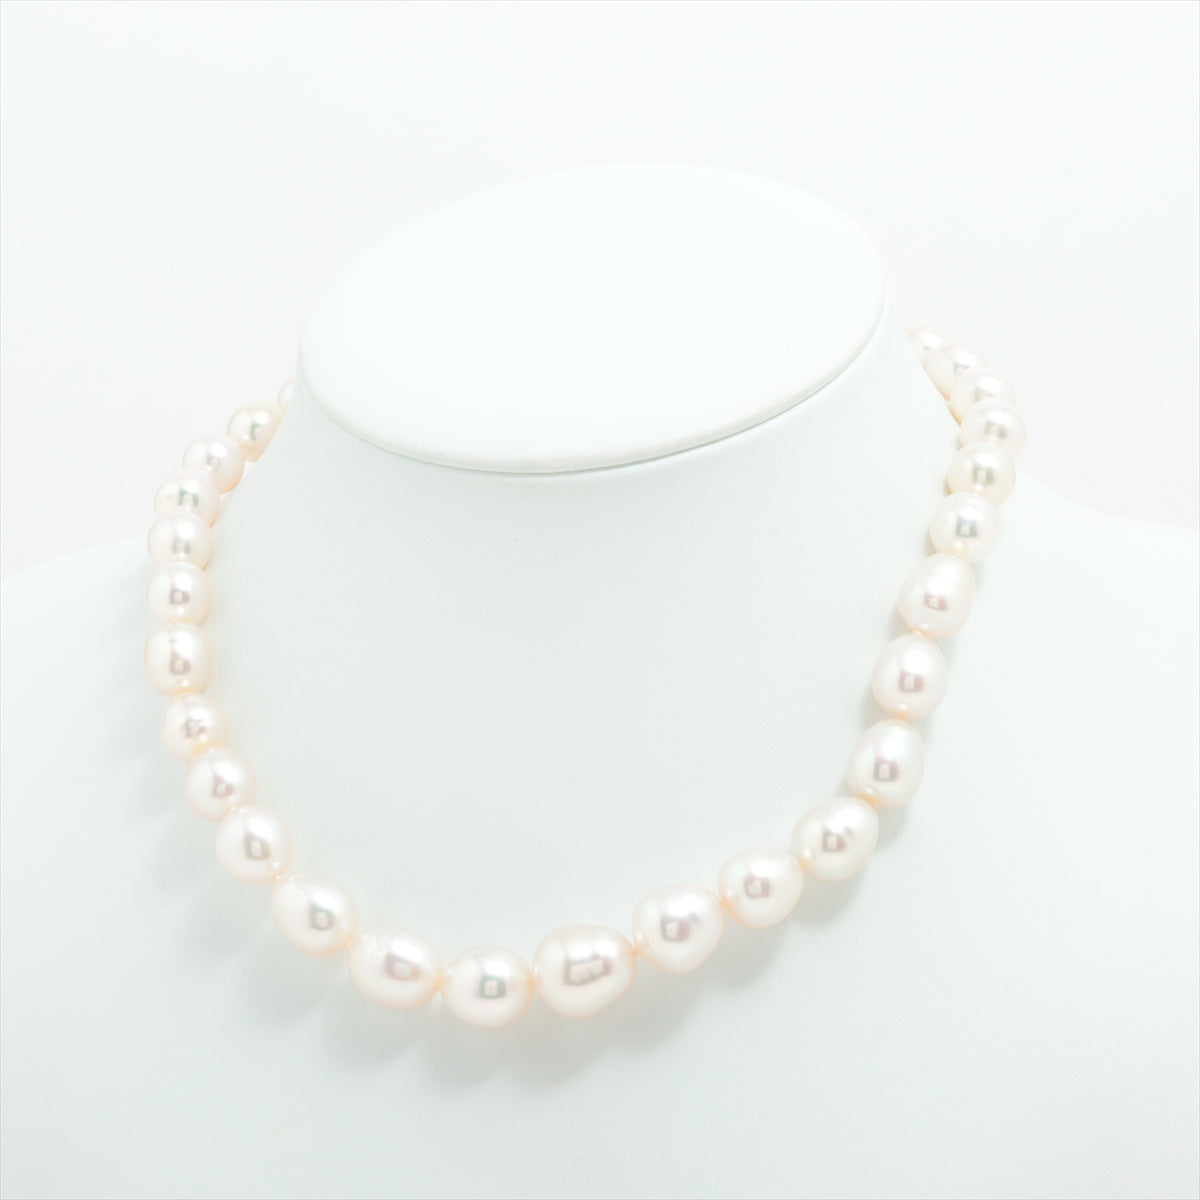 TASAKI Pearl Necklace K18WG Total 61.2 g